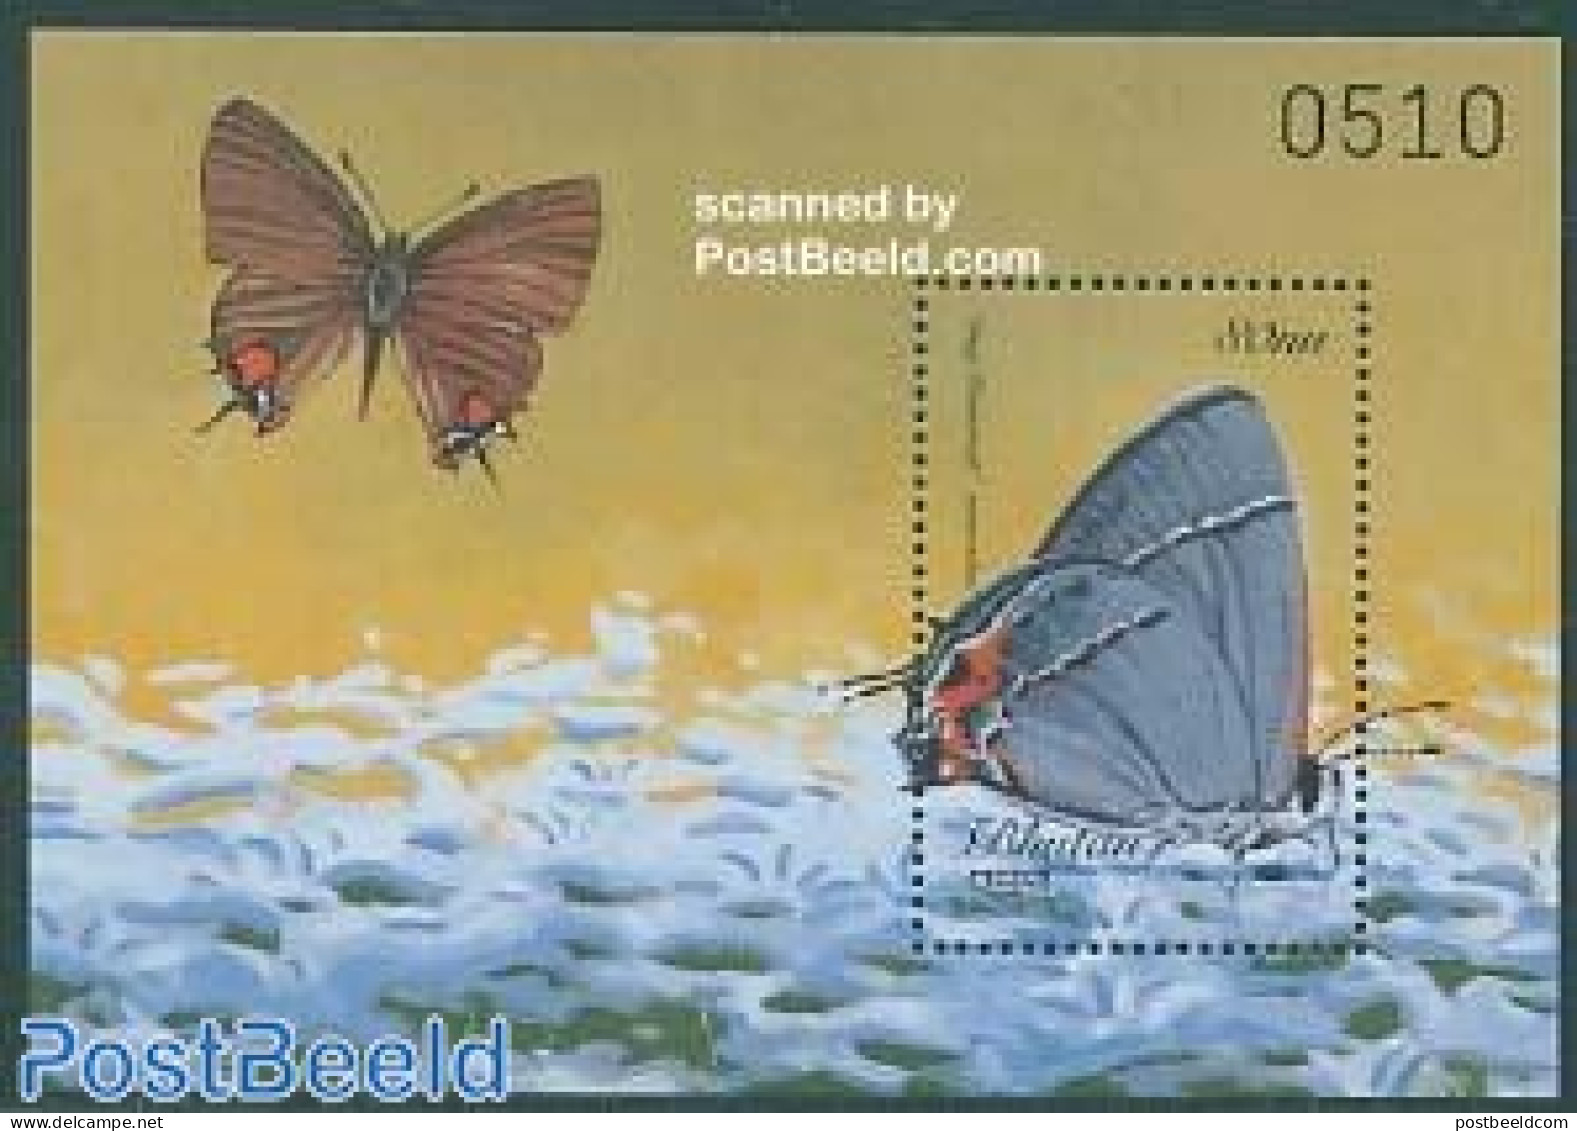 Bhutan 1999 Butterfly S/s, Strymon Melinus, Mint NH, Nature - Butterflies - Bhoutan